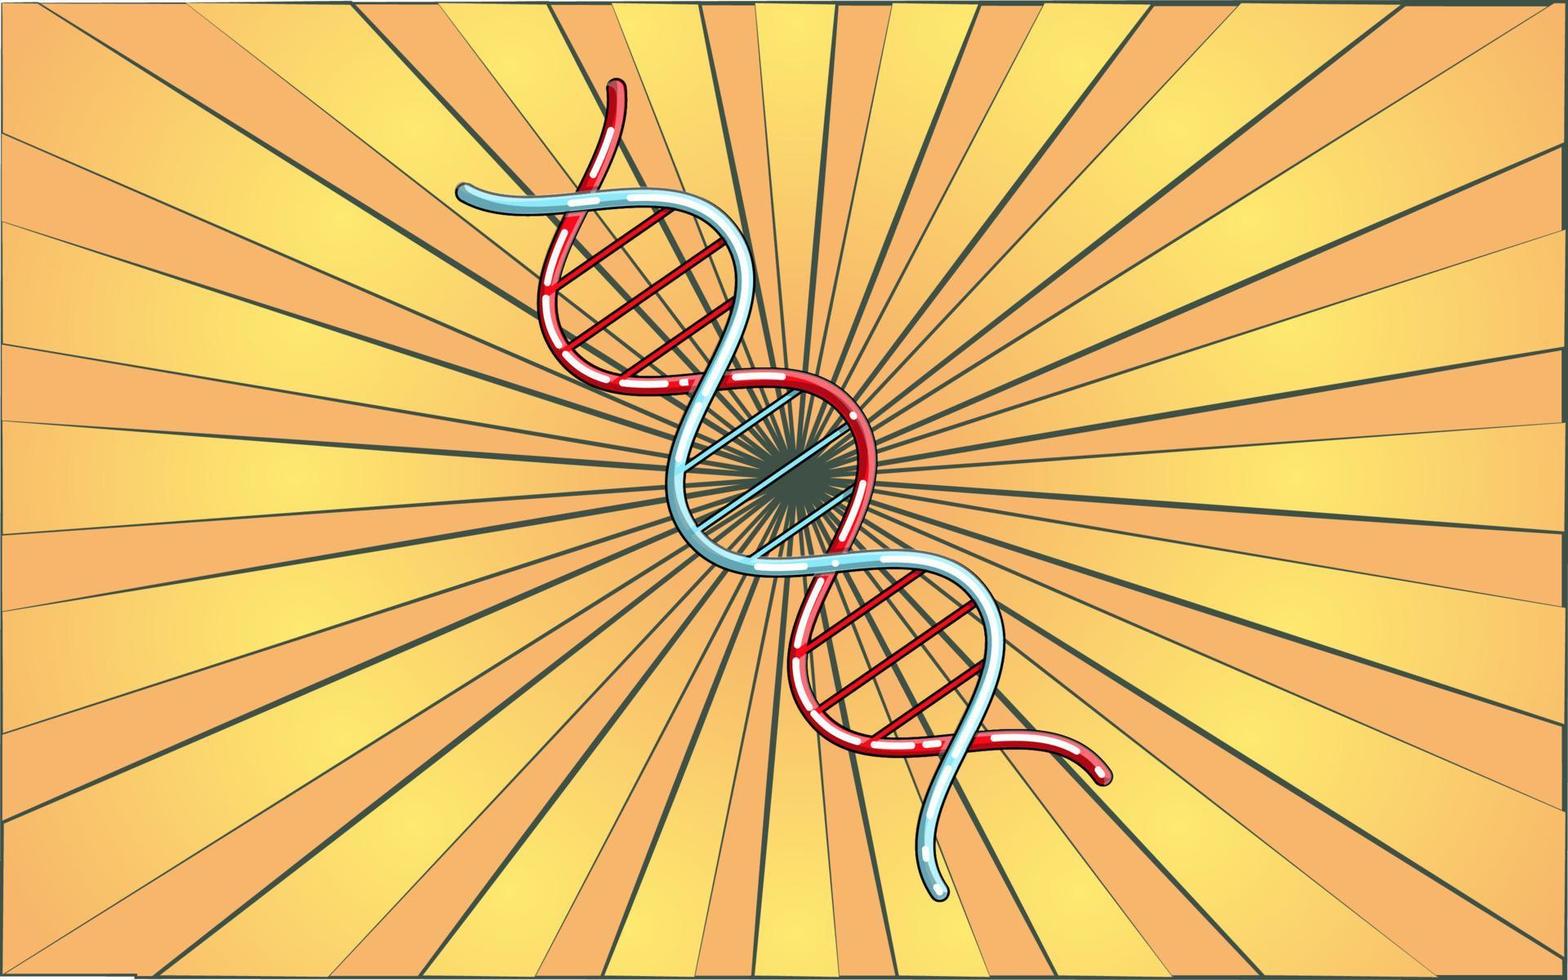 molécule d'adn de gène spirale scientifique médicale sur fond de rayons jaunes abstraits. illustration vectorielle vecteur